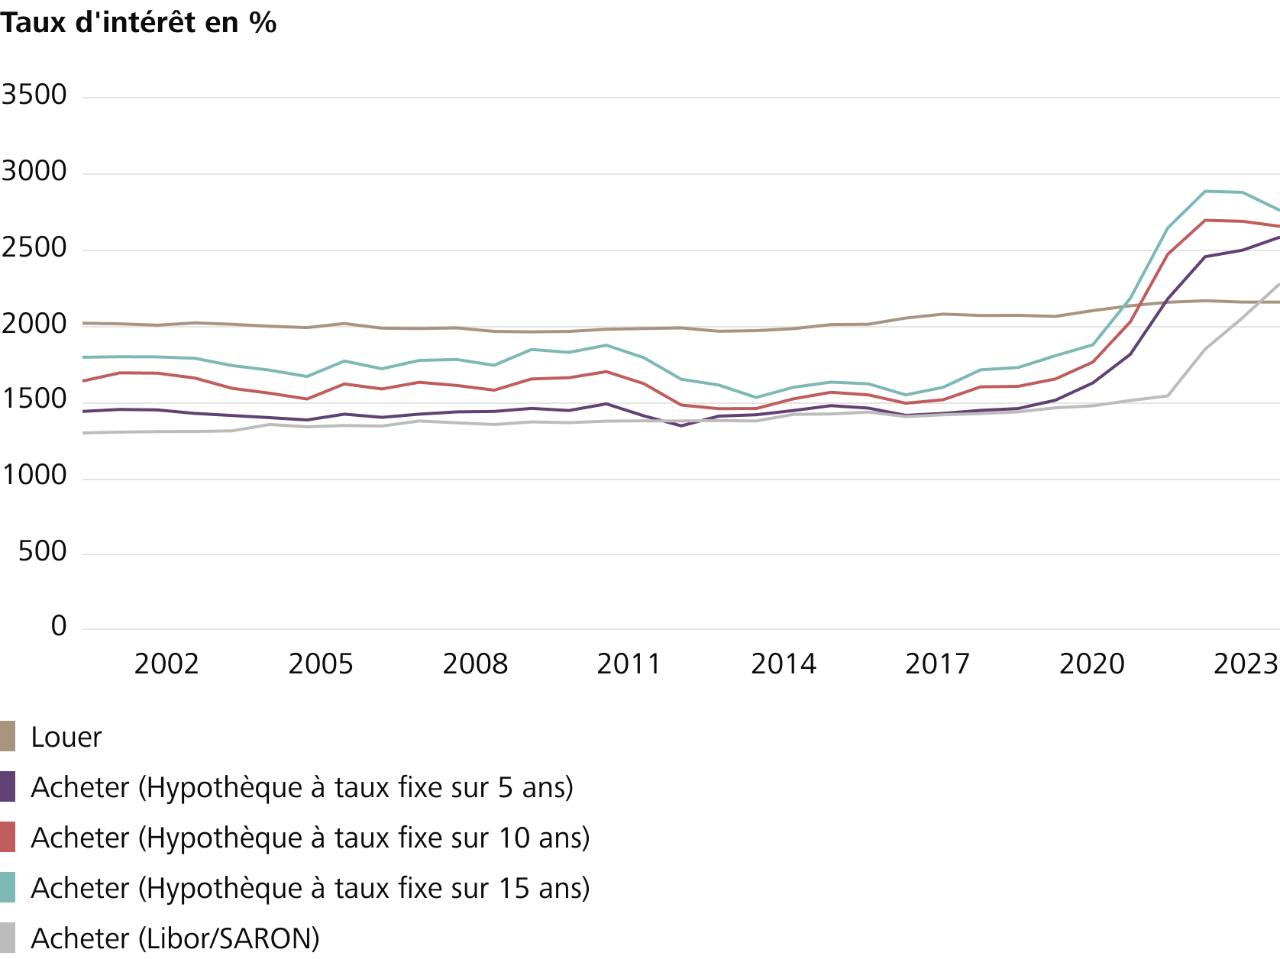 Aperçu des statistiques de location et d’achat de 2015 à 2023 en Suisse